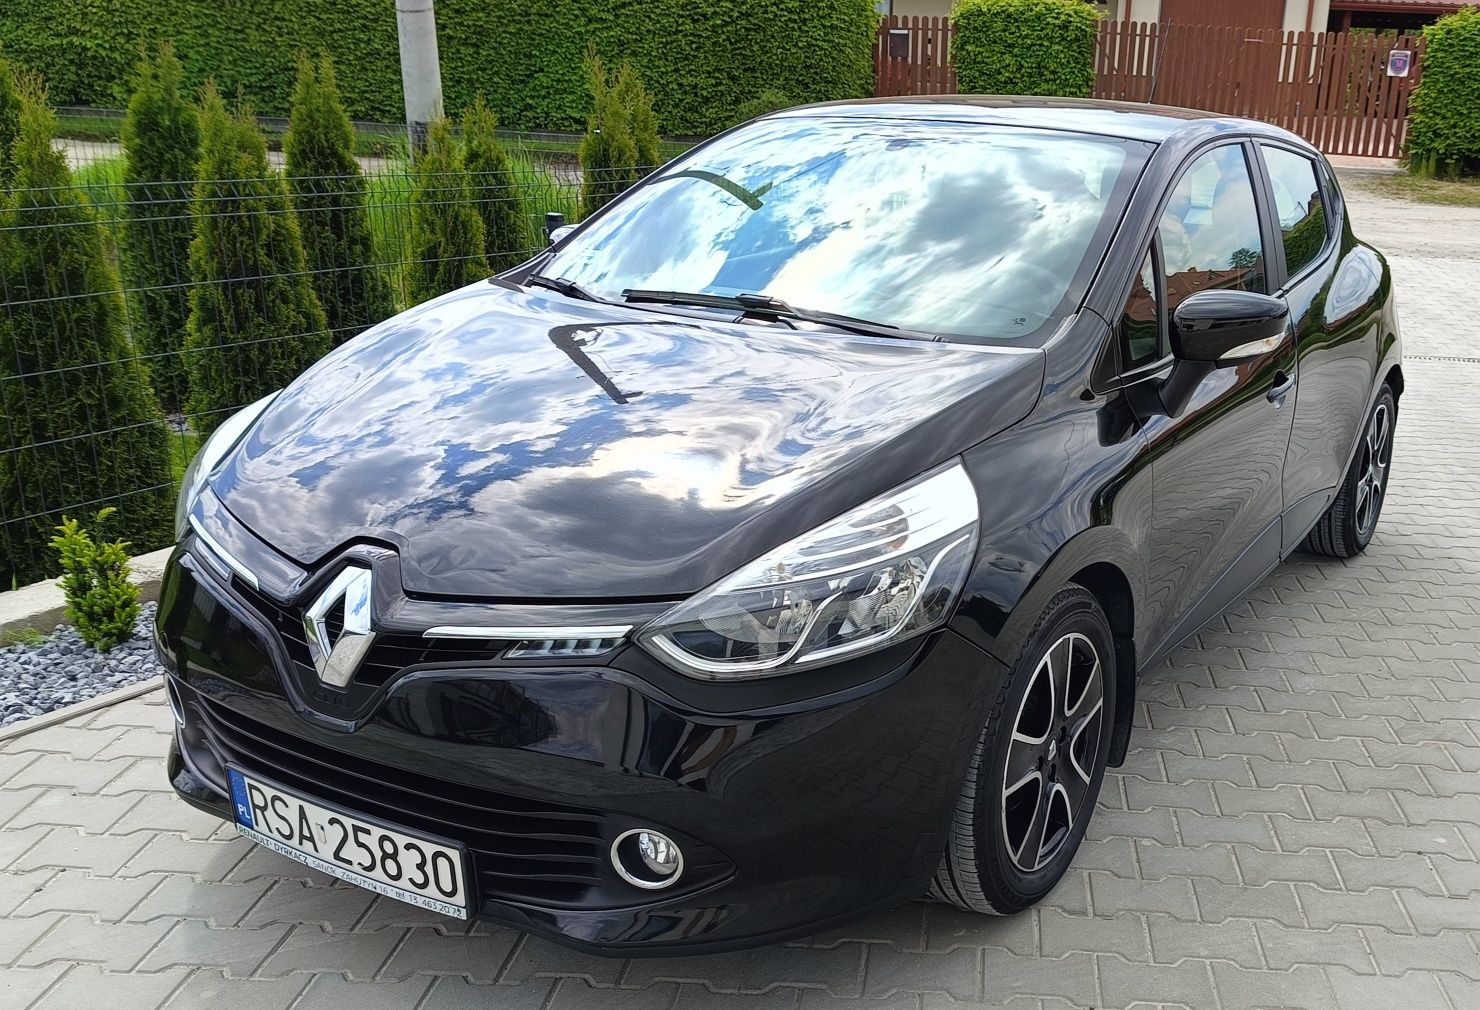 Renault Clio IV 2015 0,9 Tce Czarny LPG  gaz